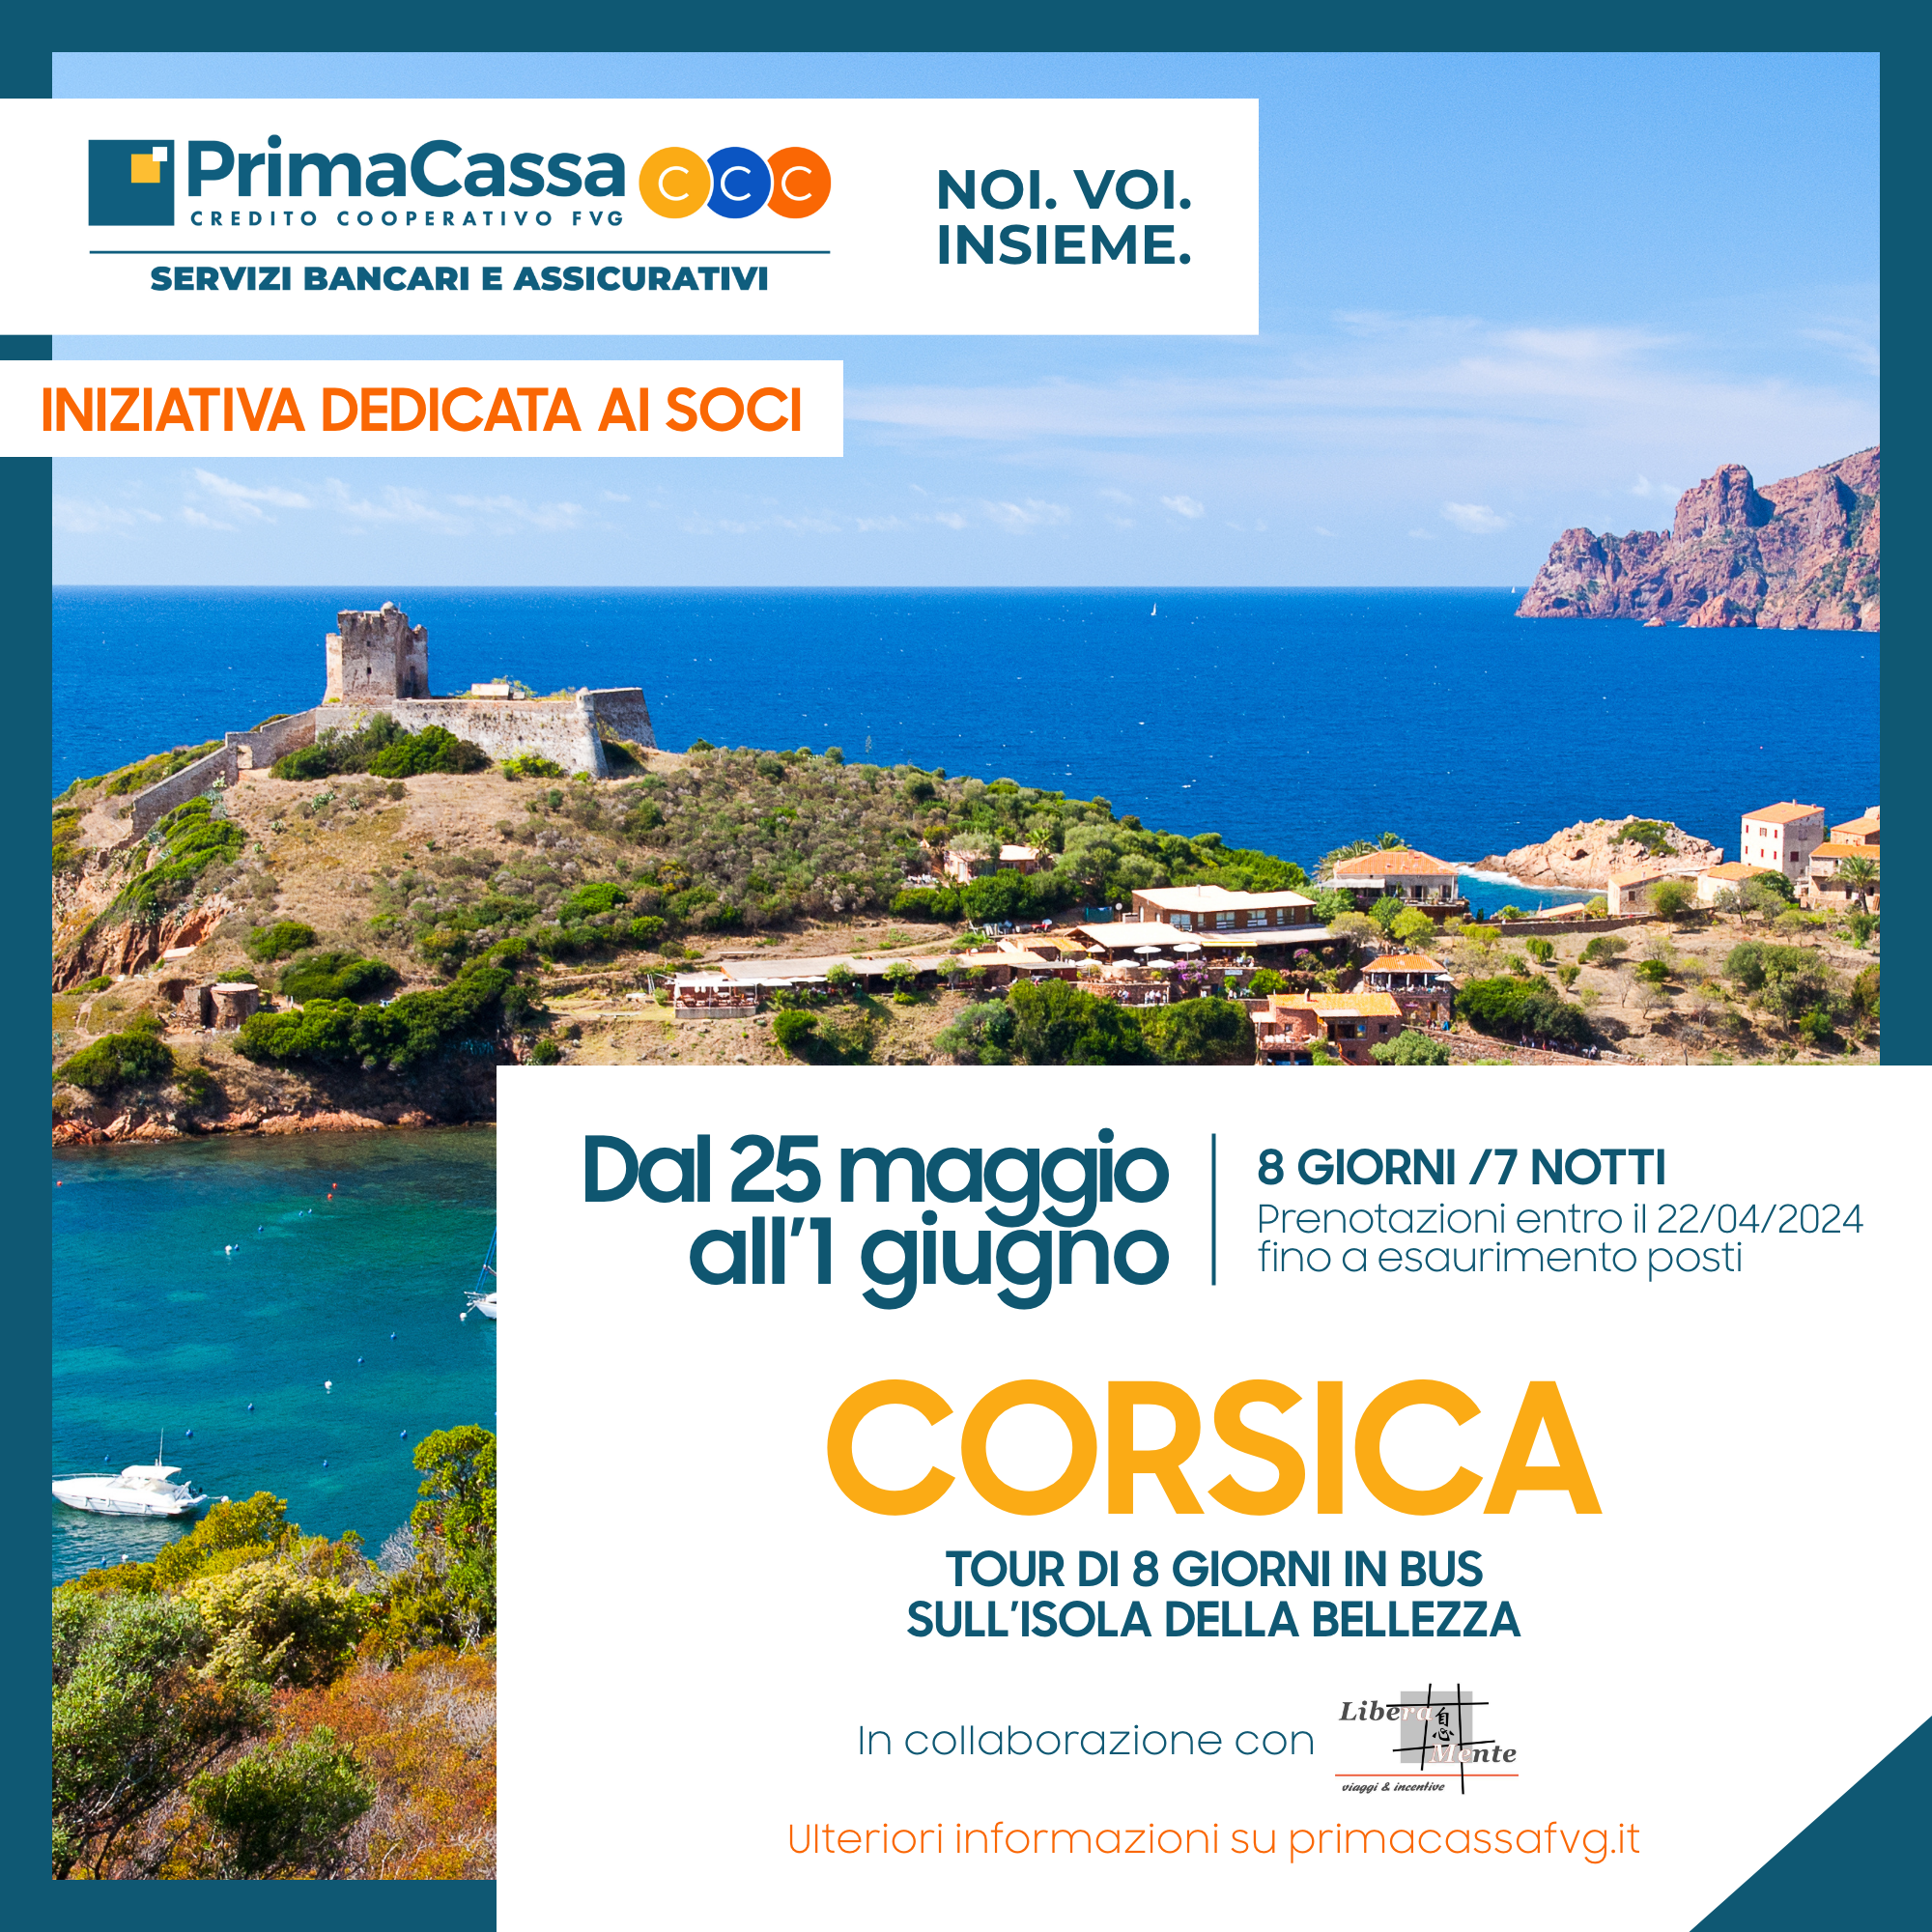 Gite Sociali - Tour della Corsica  